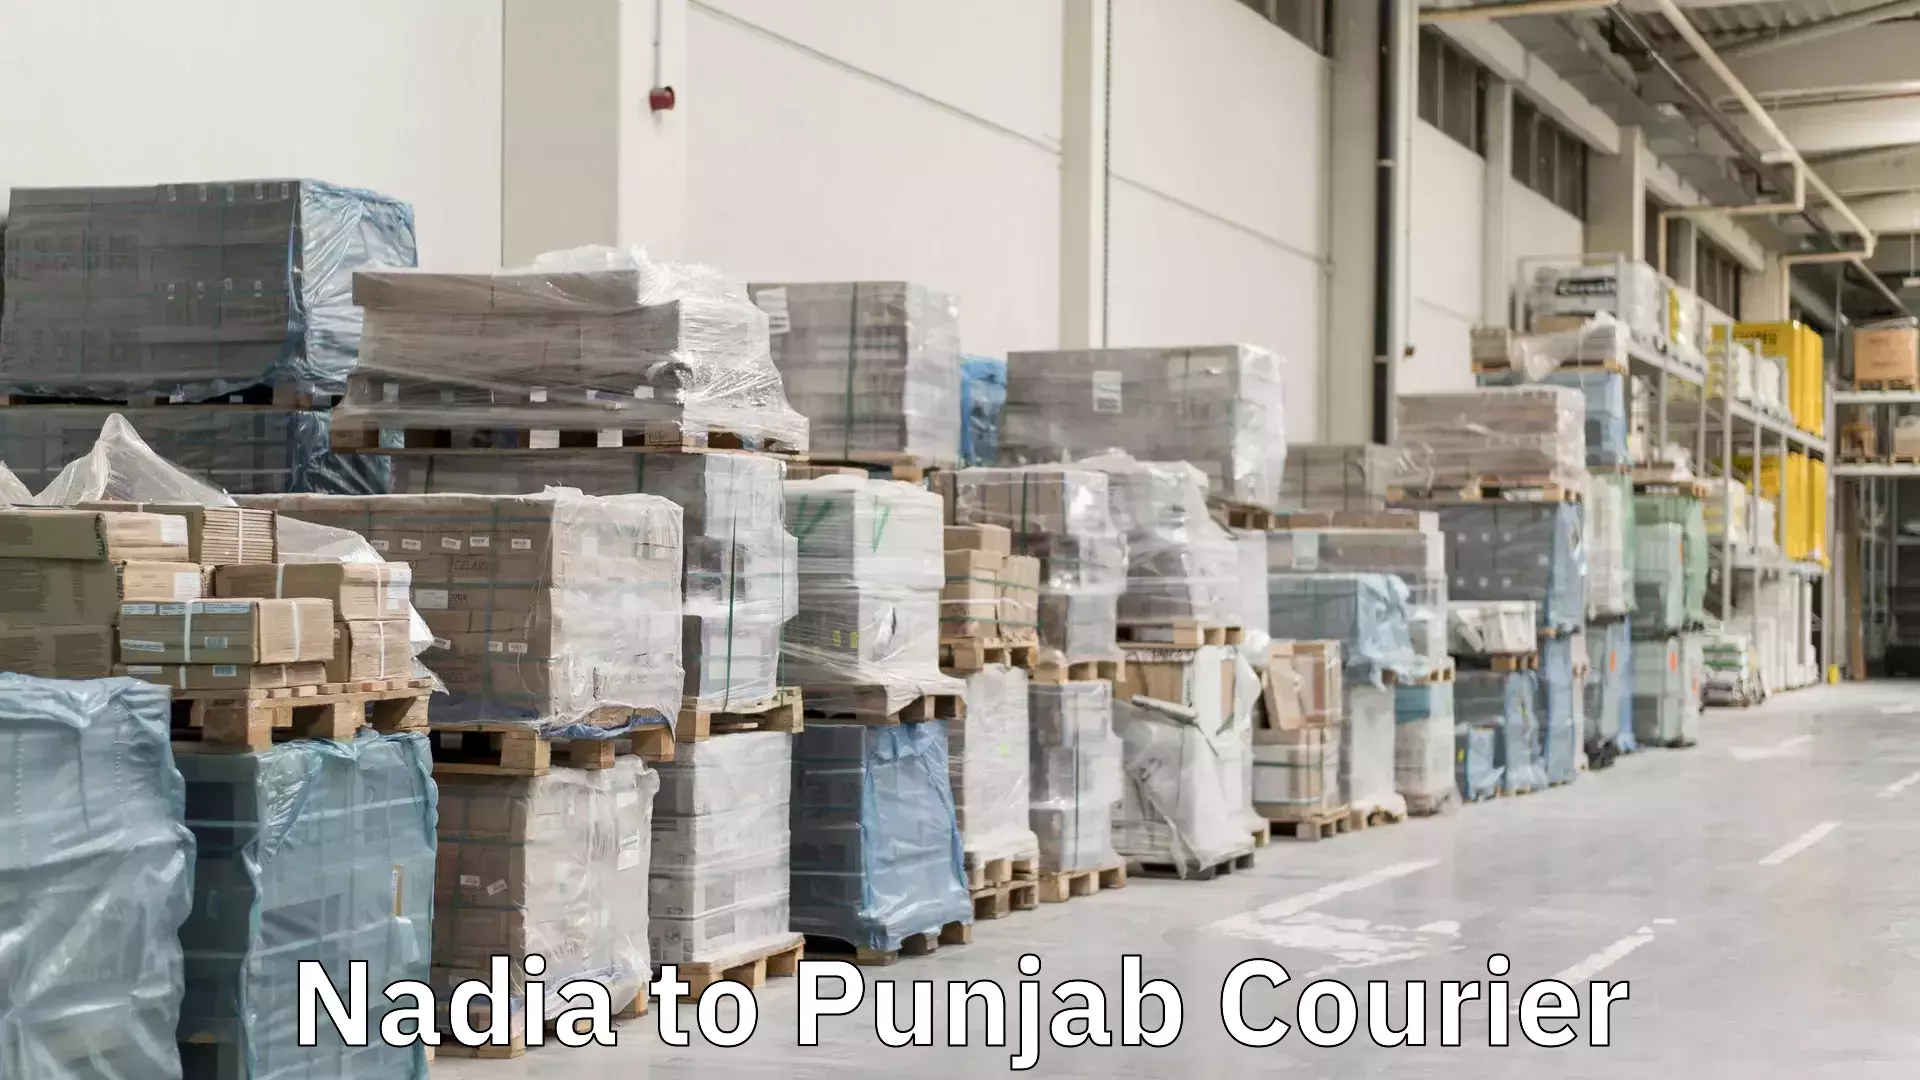 International shipping in Nadia to Punjab